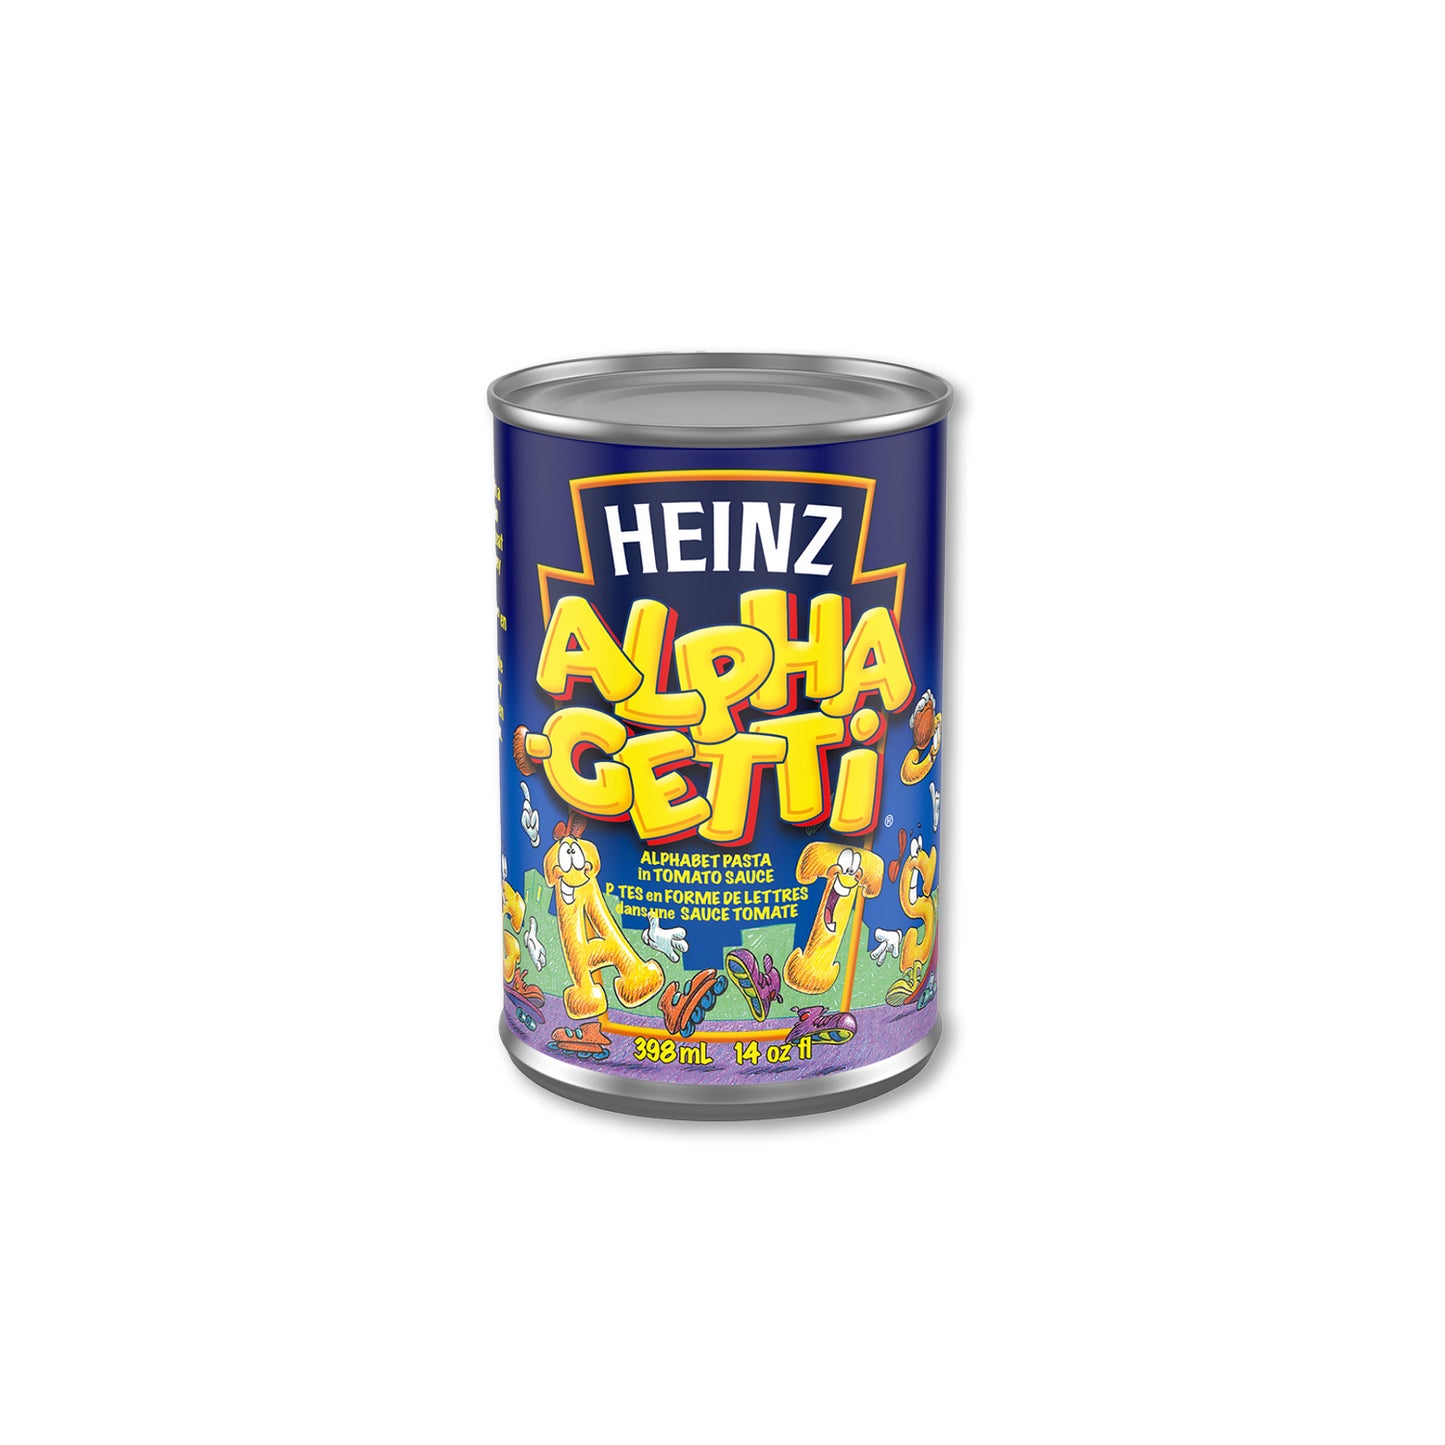 Heinz Alphagetti Pasta